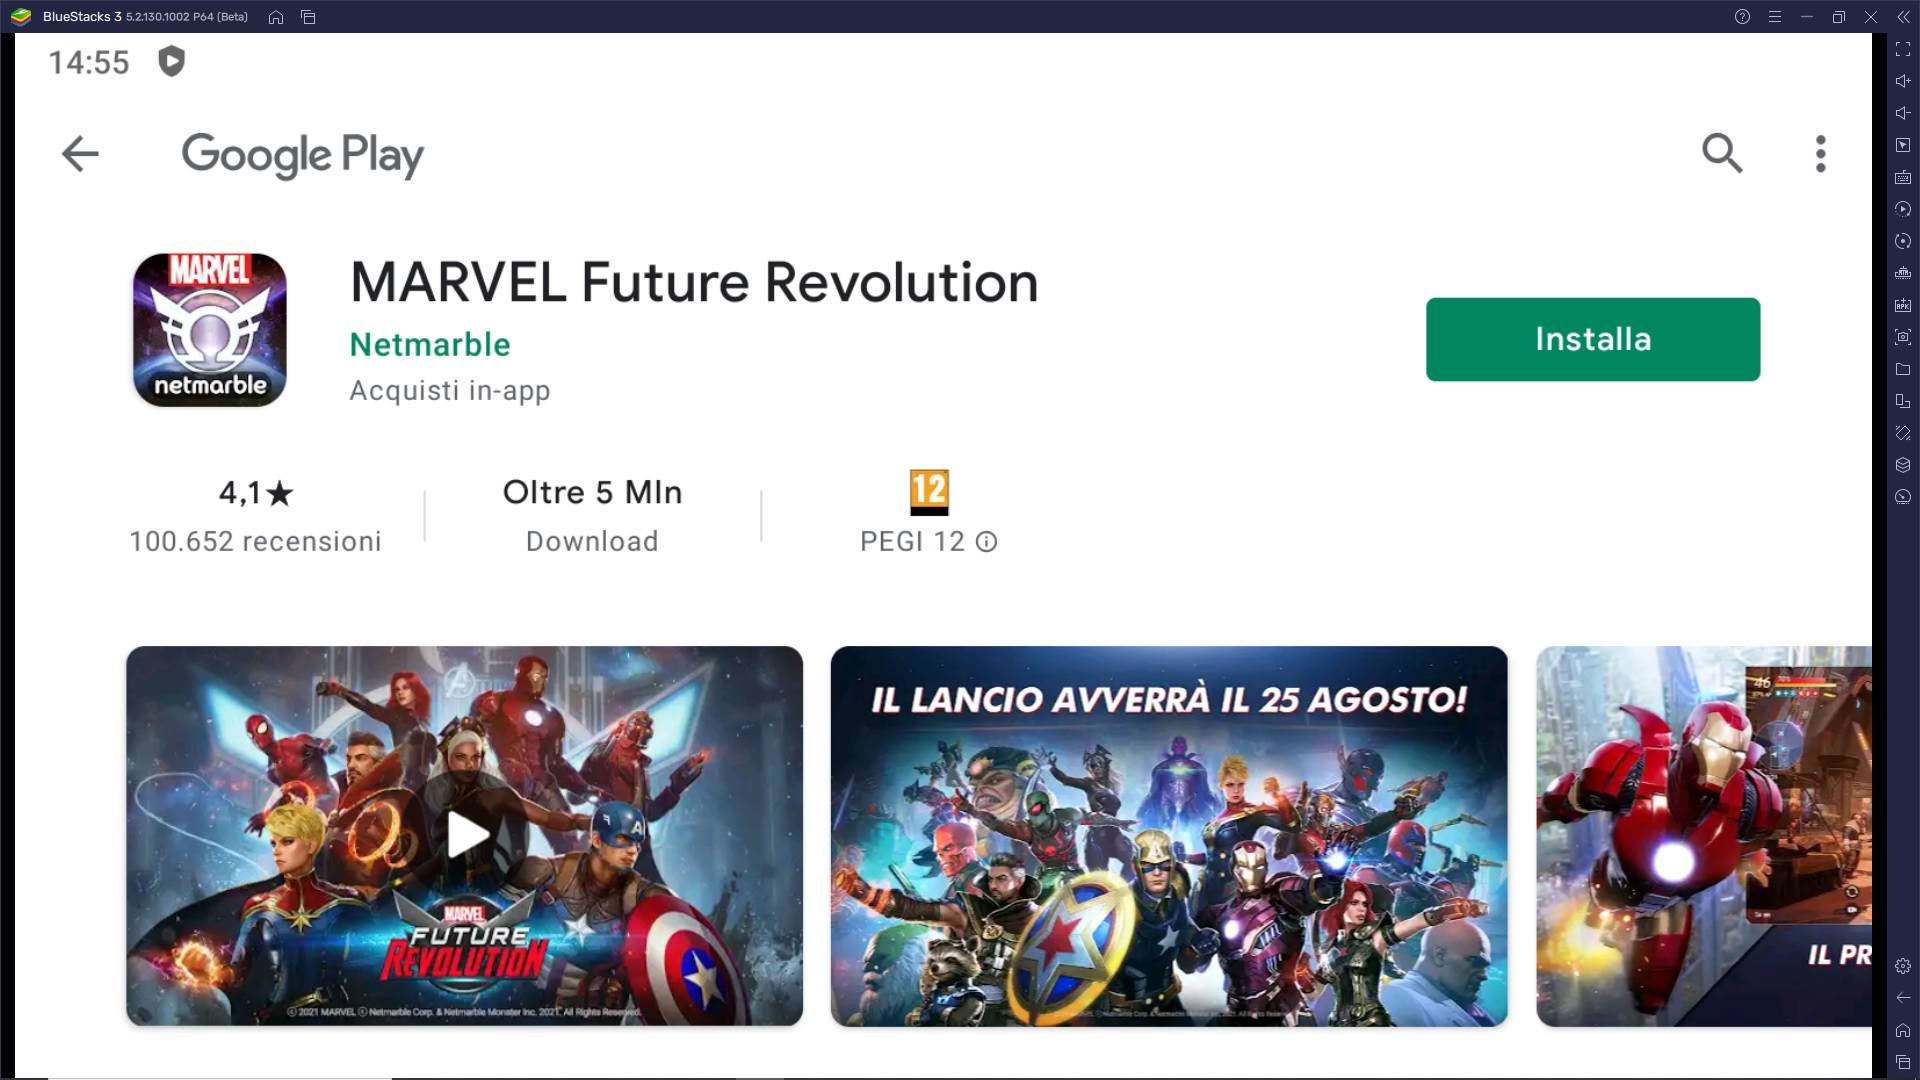 MARVEL Future Revolution è disponibile su PC con BlueStacks - Provalo subito!